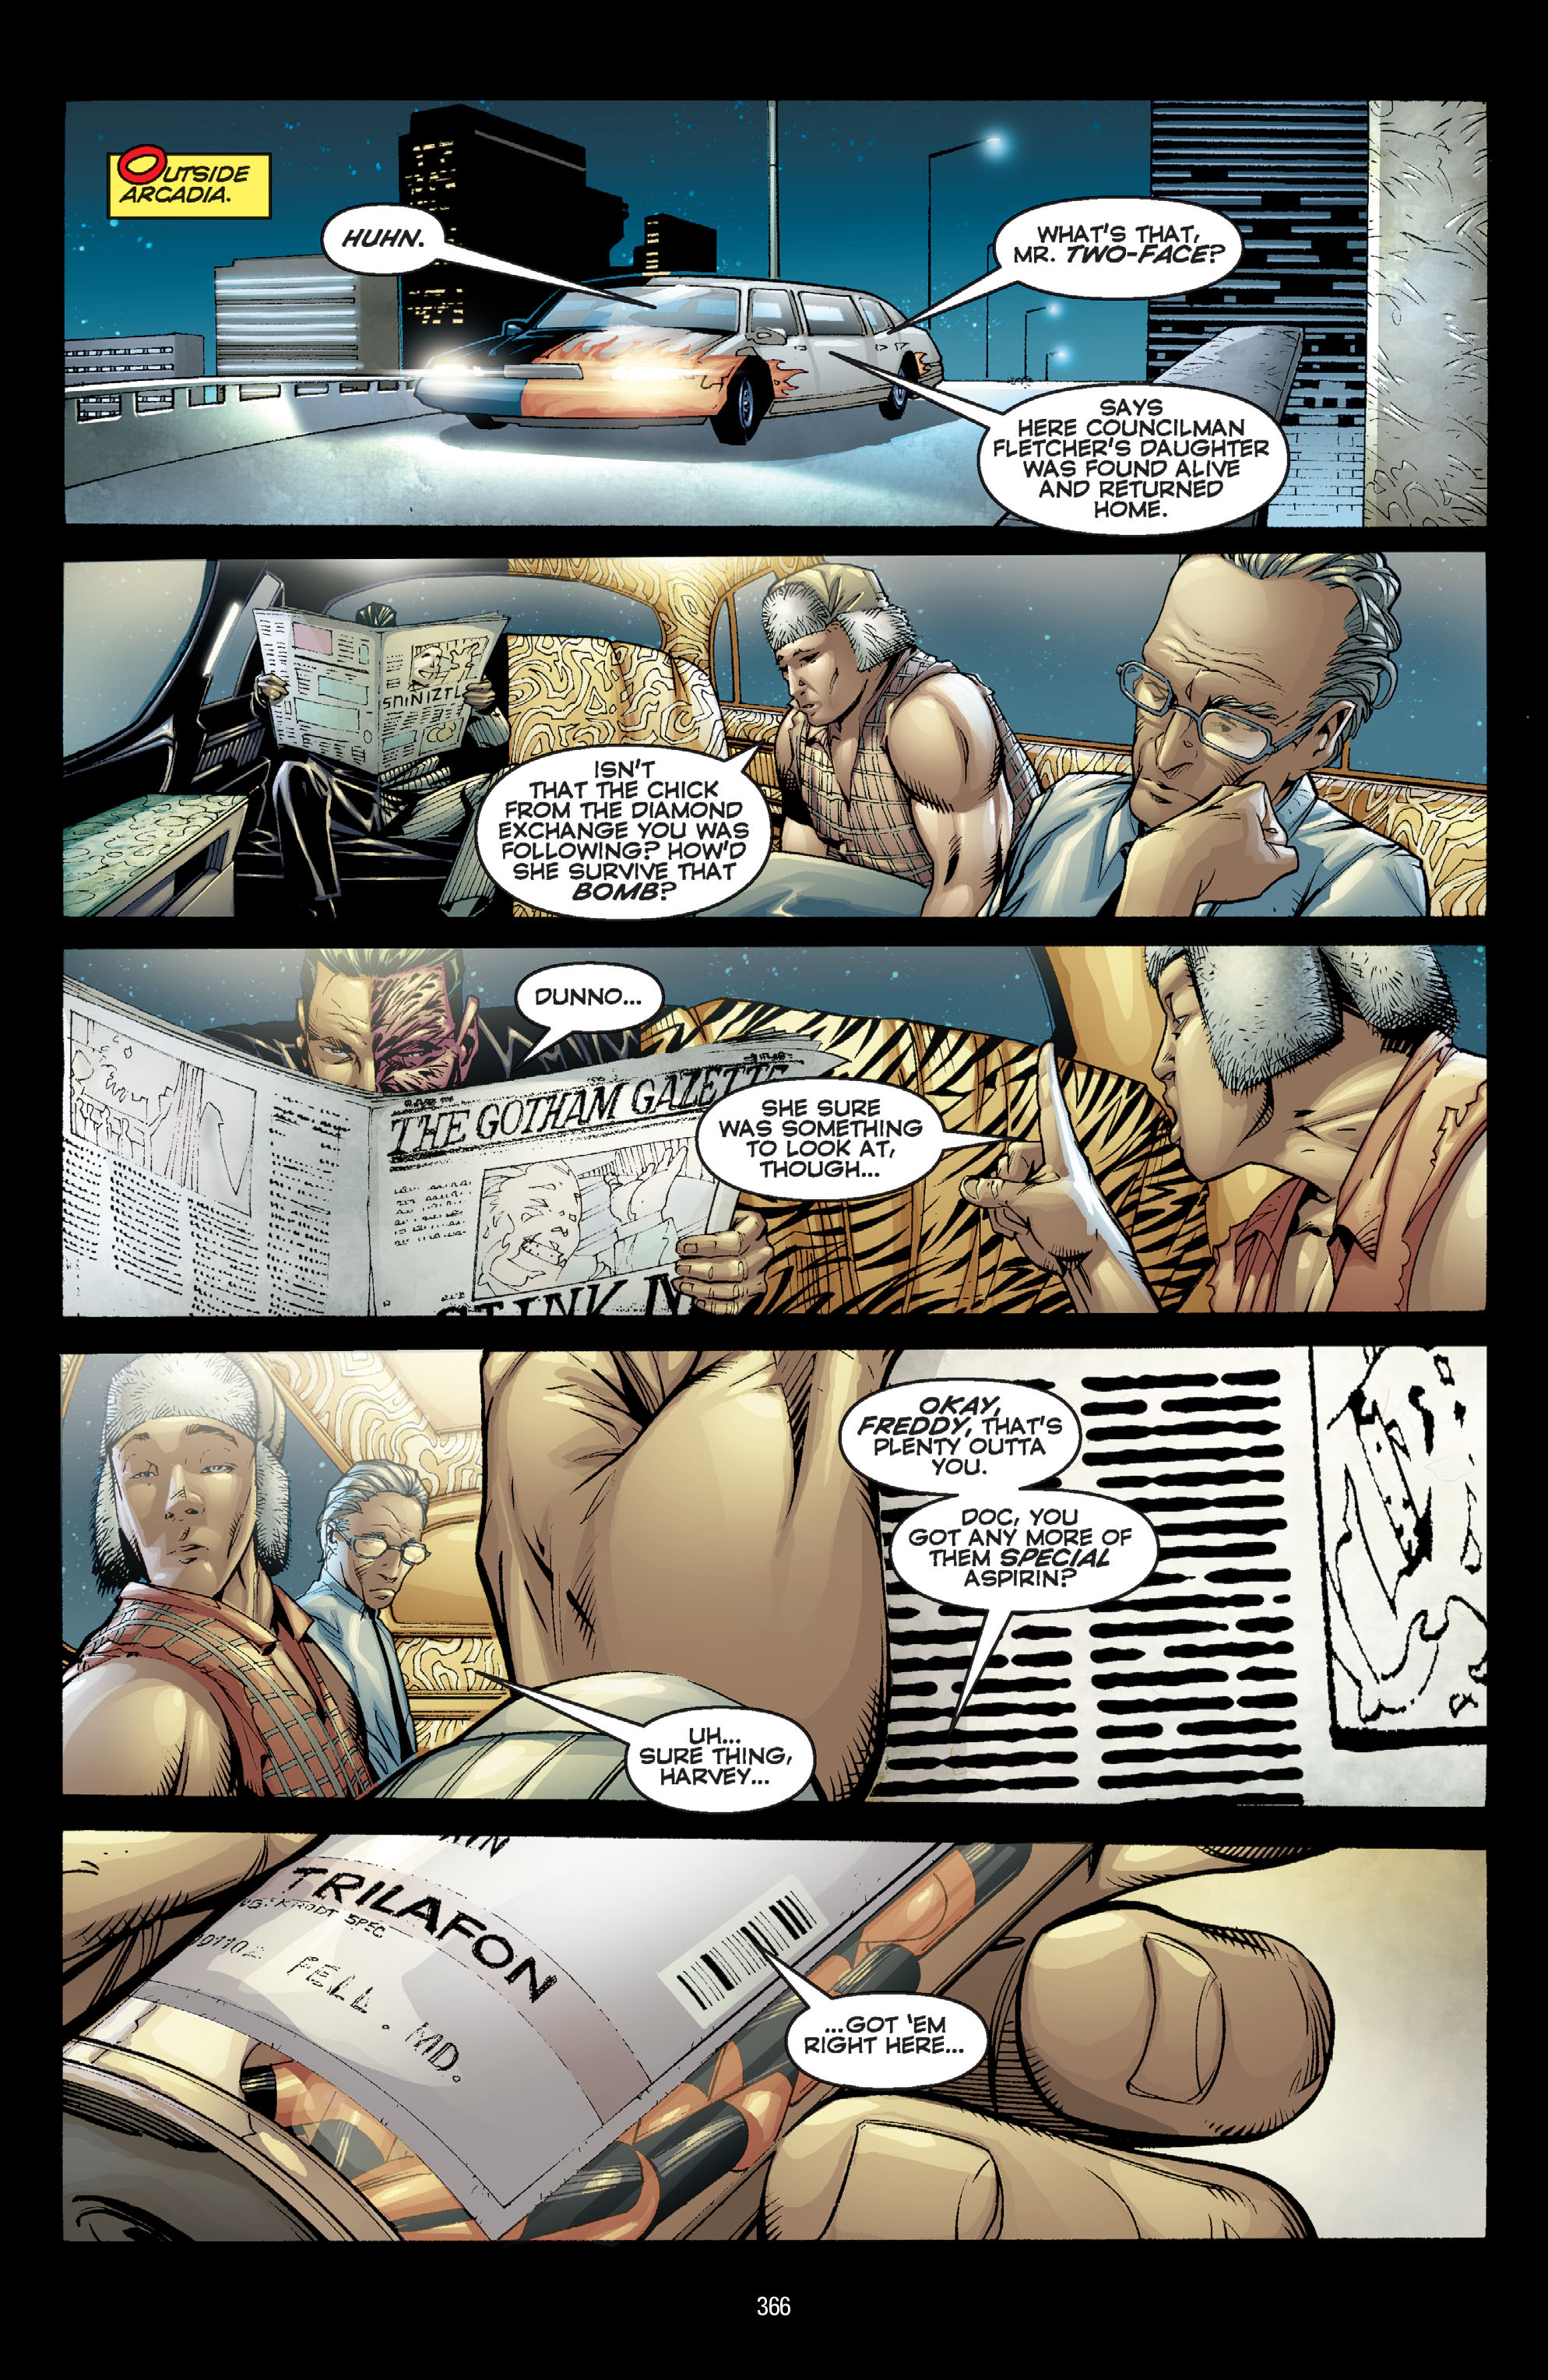 DC Comics/Dark Horse Comics: Justice League Full #1 - English 356